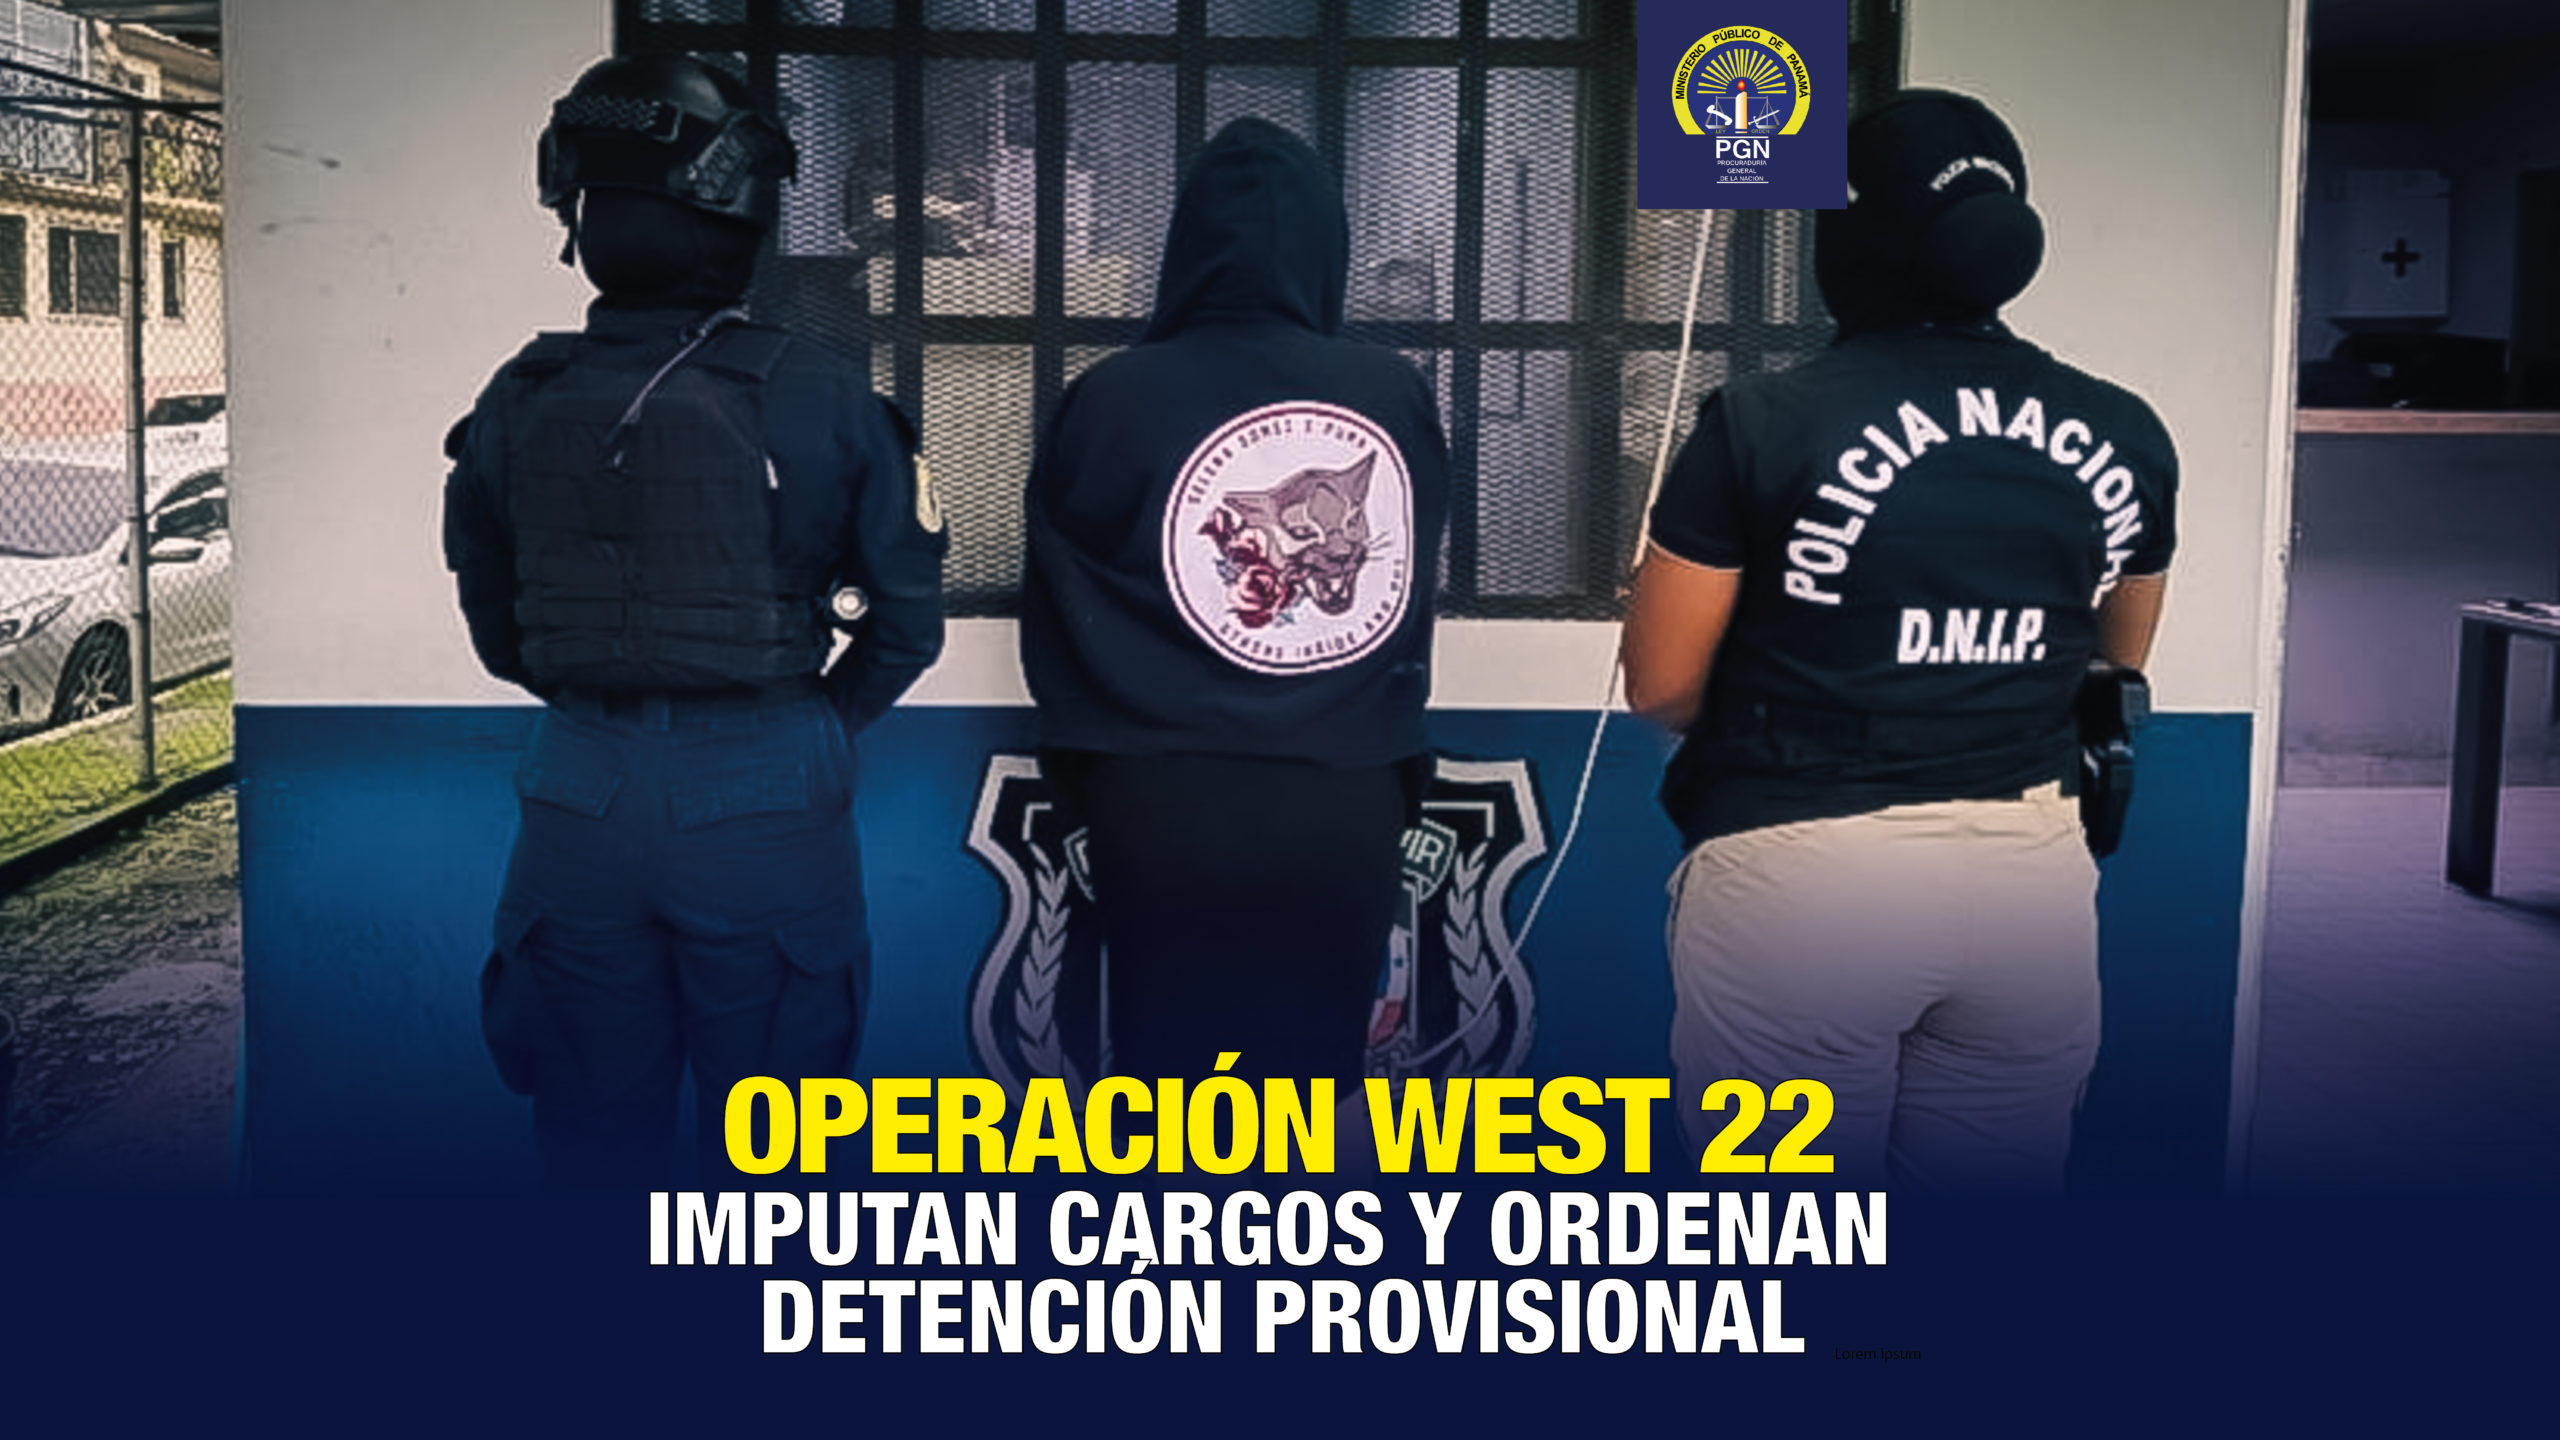 Imputan cargos y ordenan la detención provisional a hermanas aprehendidas en la operación “West 22”